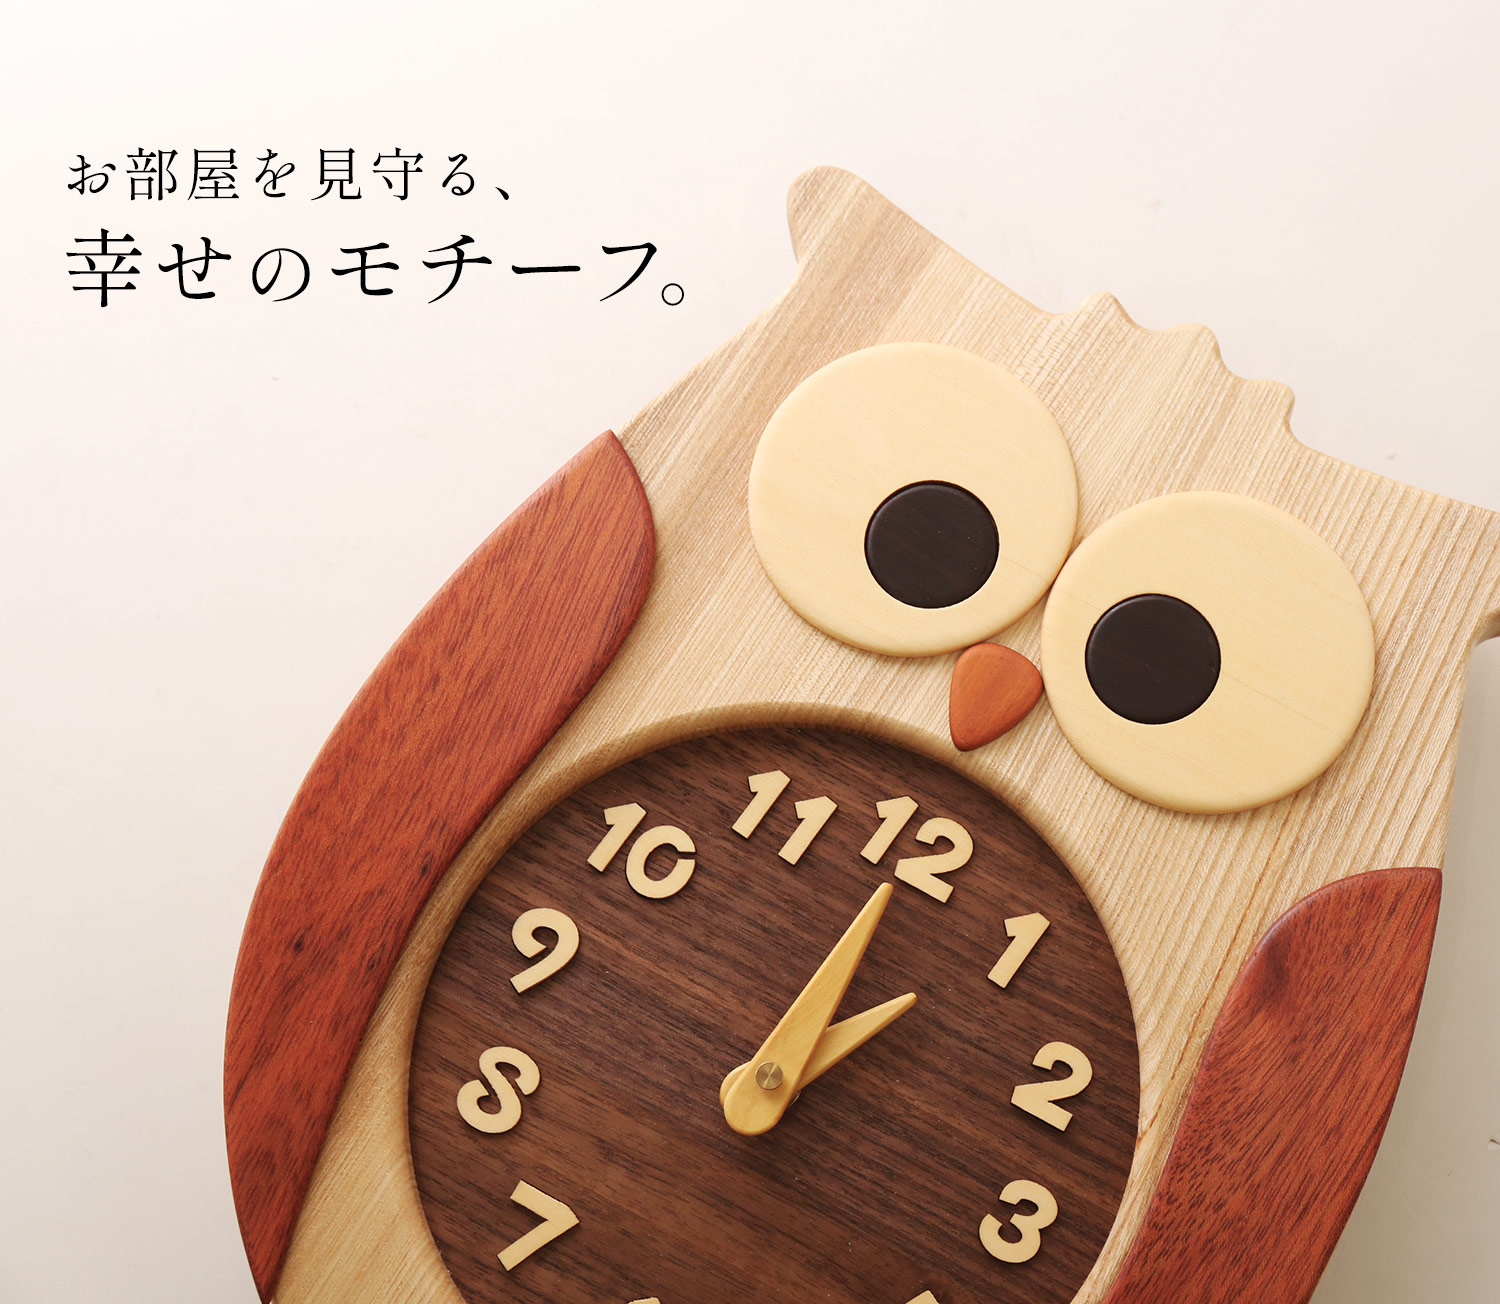 ふくろう掛け時計 壁掛け時計 おしゃれ かわいい 天然木 ふくろう 木製 